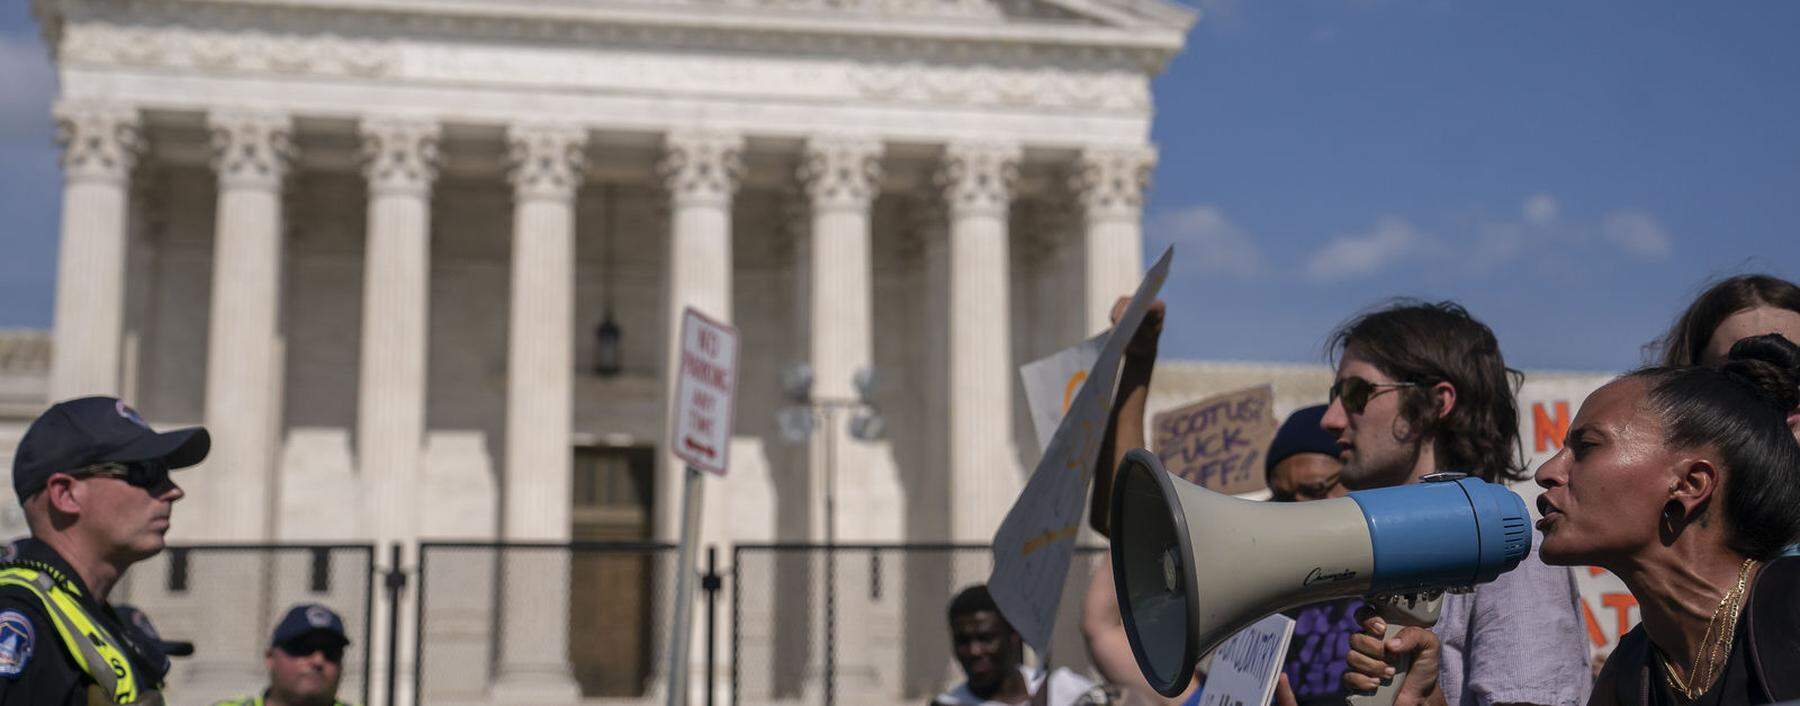 Nach dem Abtreibungsurteil des Obersten Gerichtshofs haben sich Menschen vor dem Supreme Court in Washington versammelt - die einen feierten die Entscheidung, die anderen zeigten sich entsetzt. 